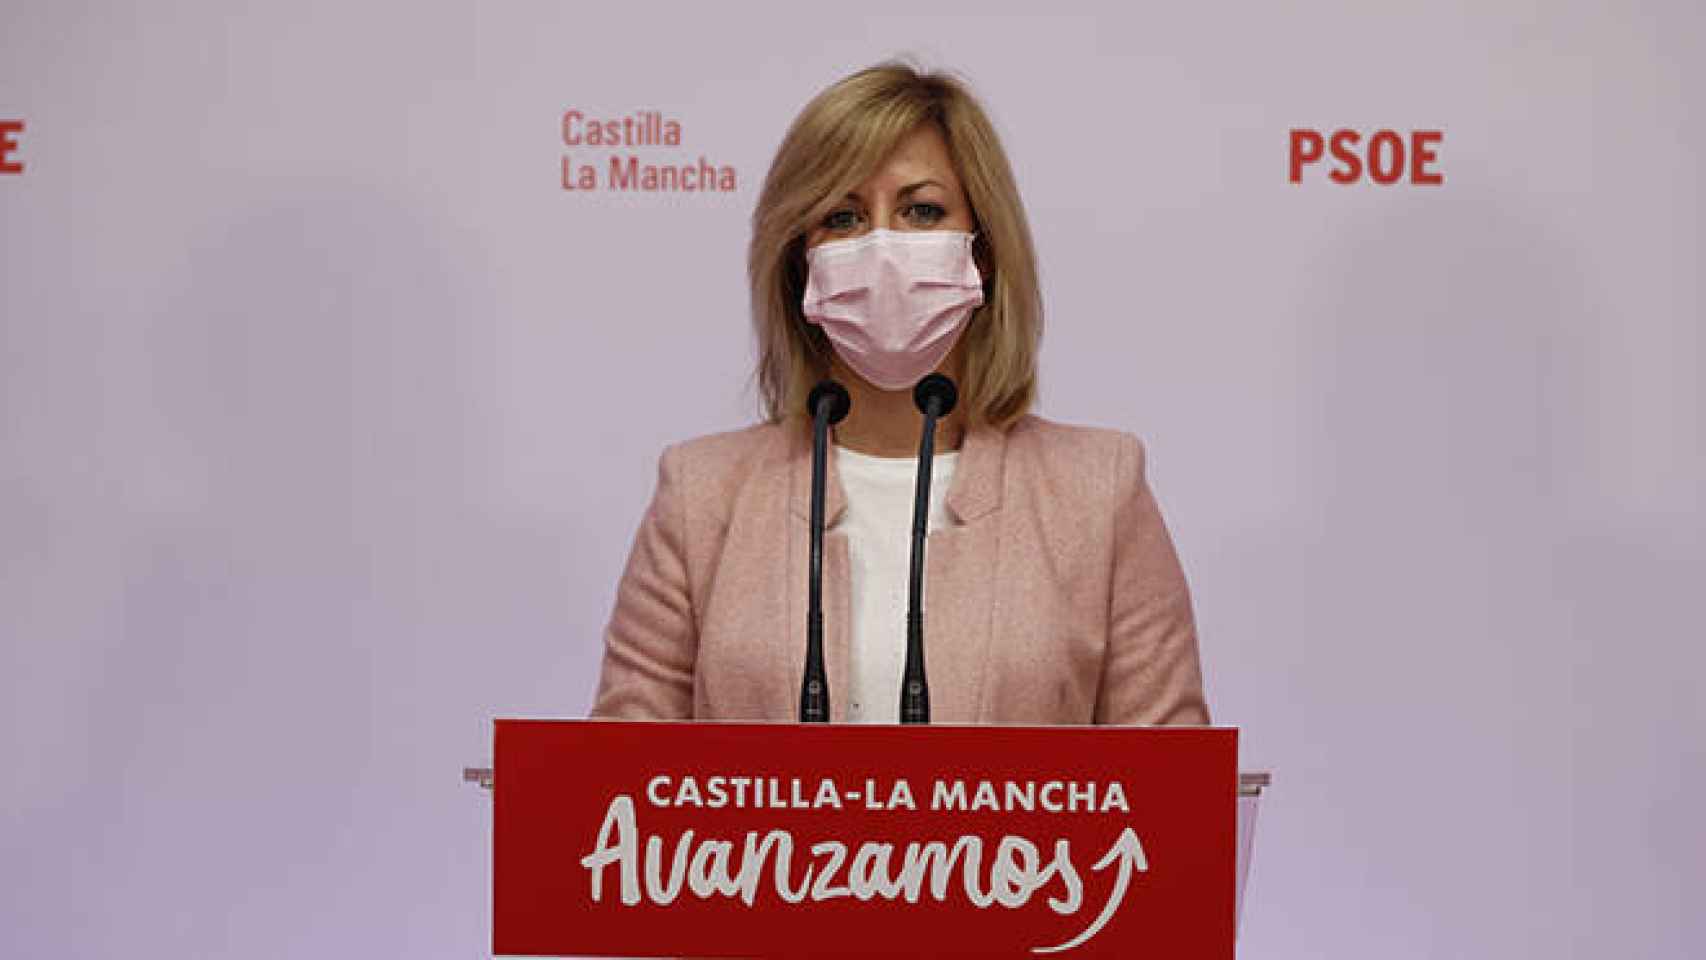 FOTO: PSOE.